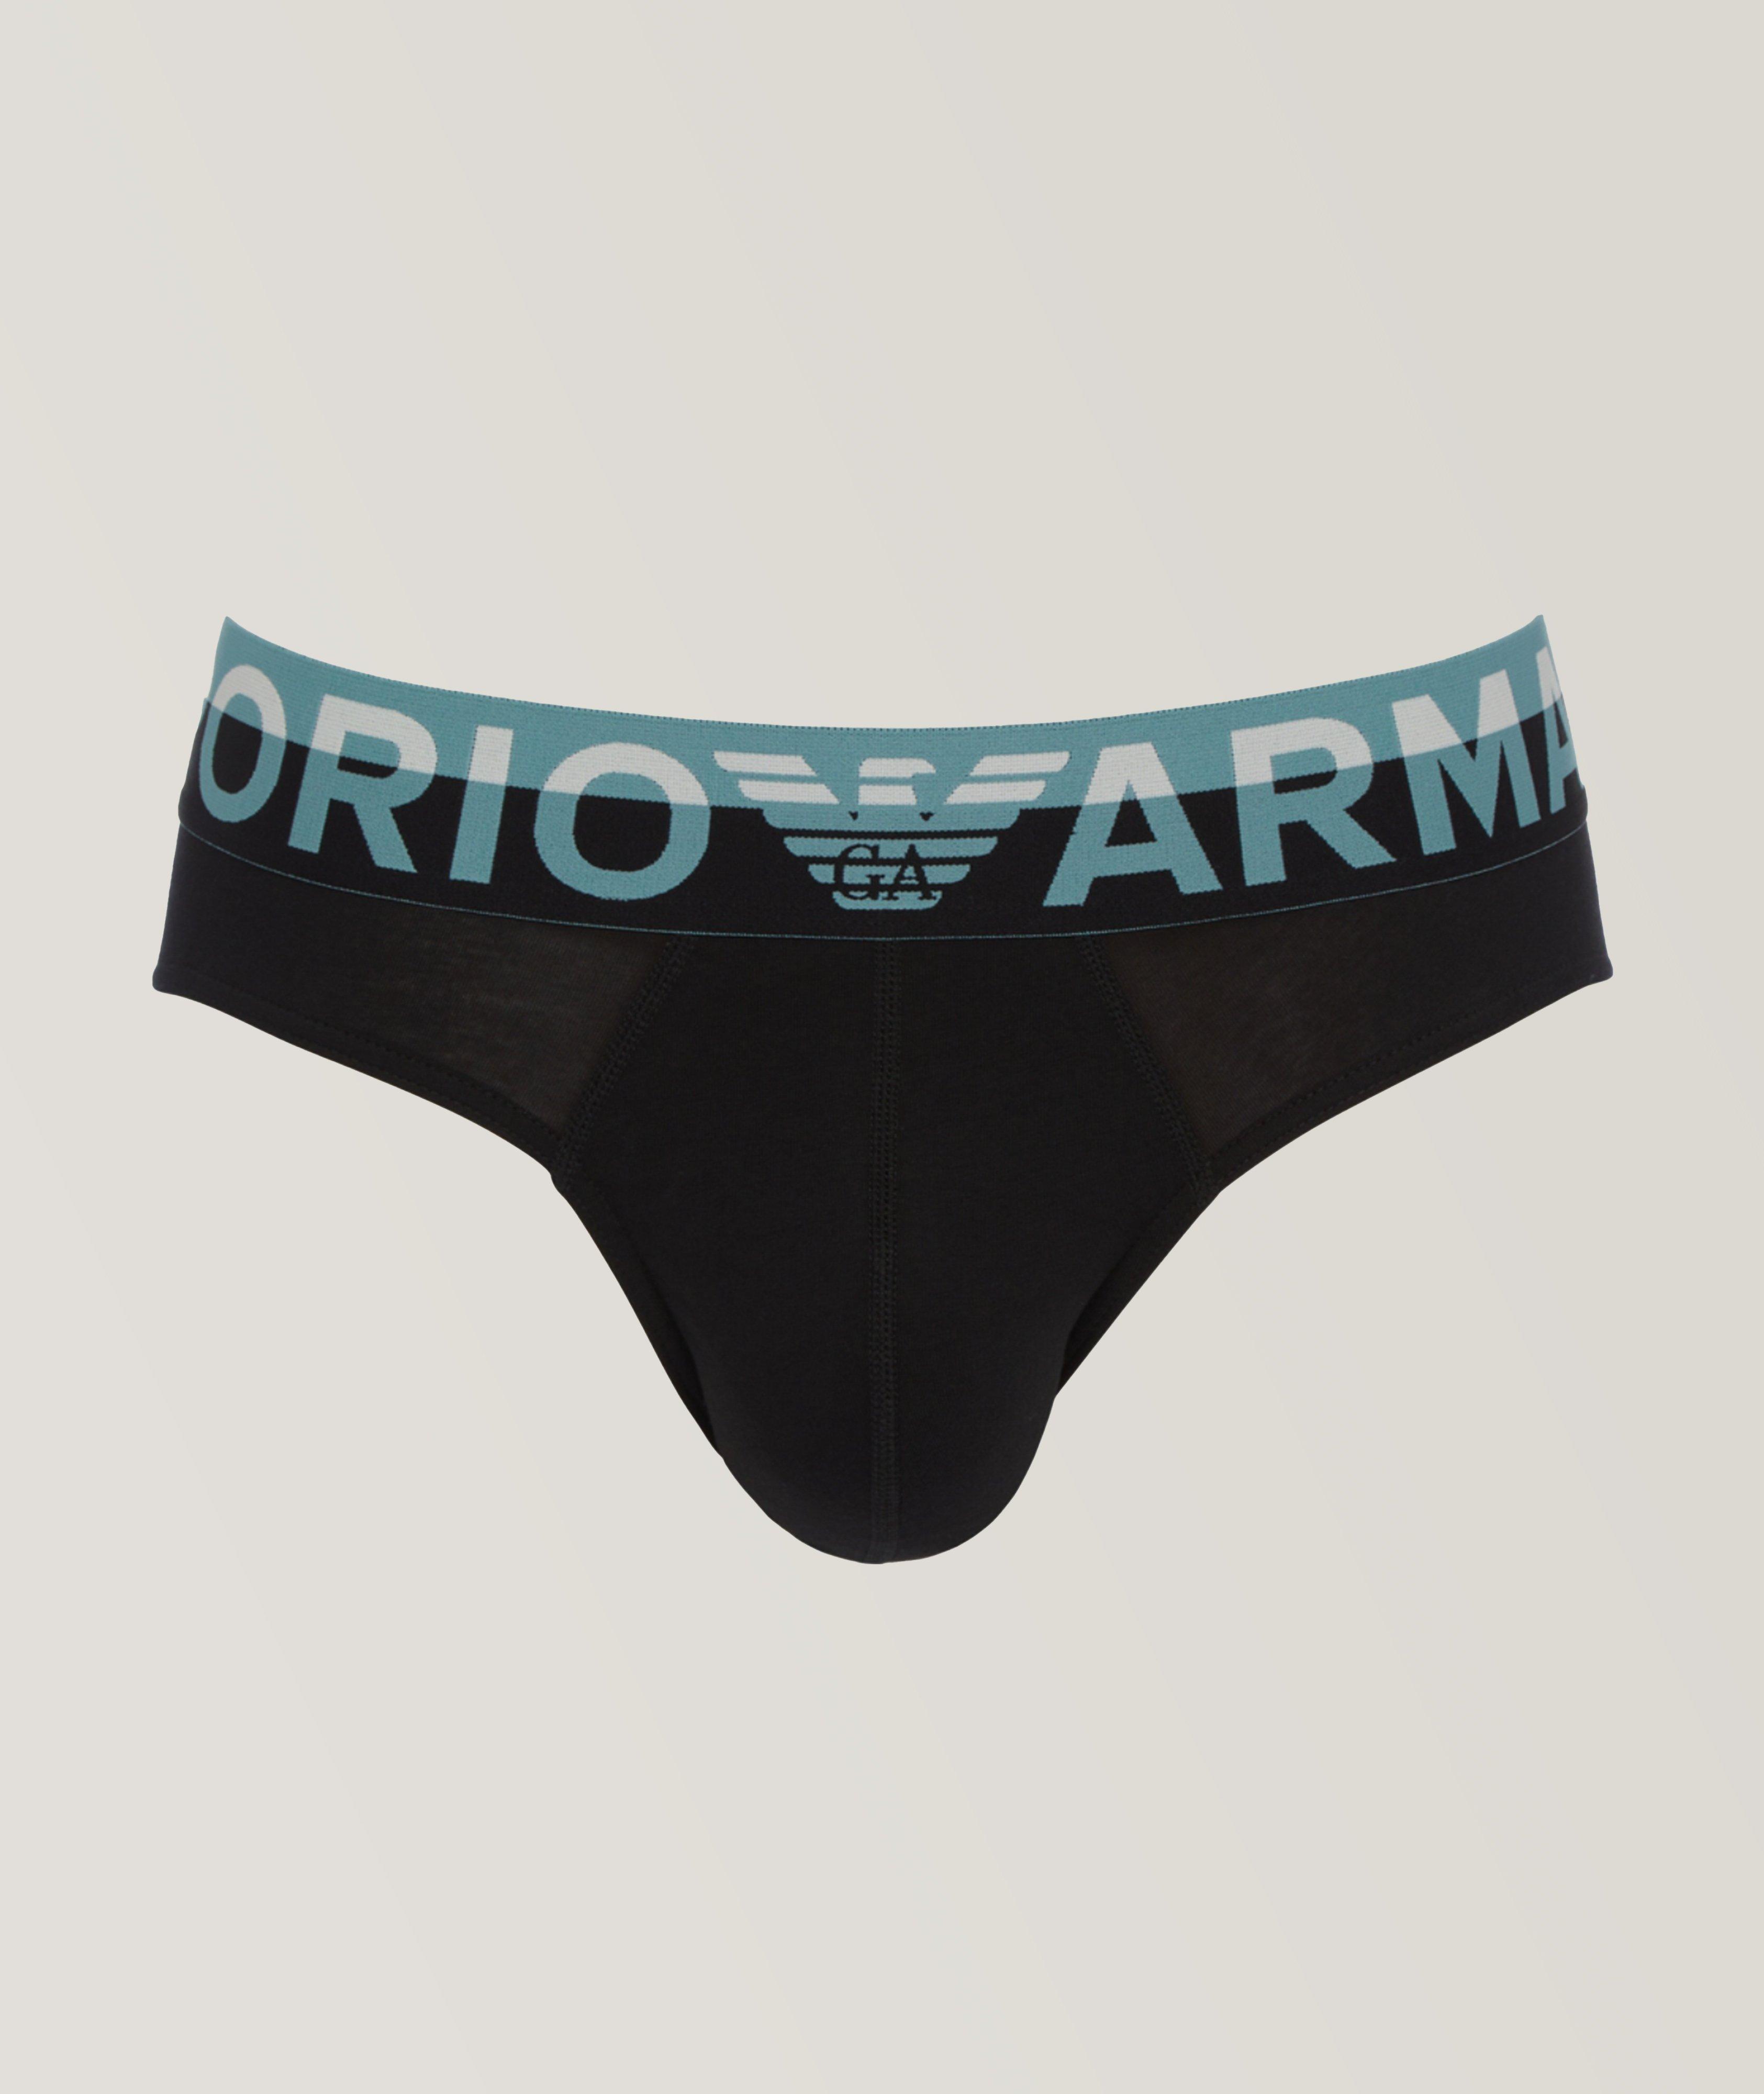 Emporio Armani Wordmark Stretch-Cotton Briefs, Underwear